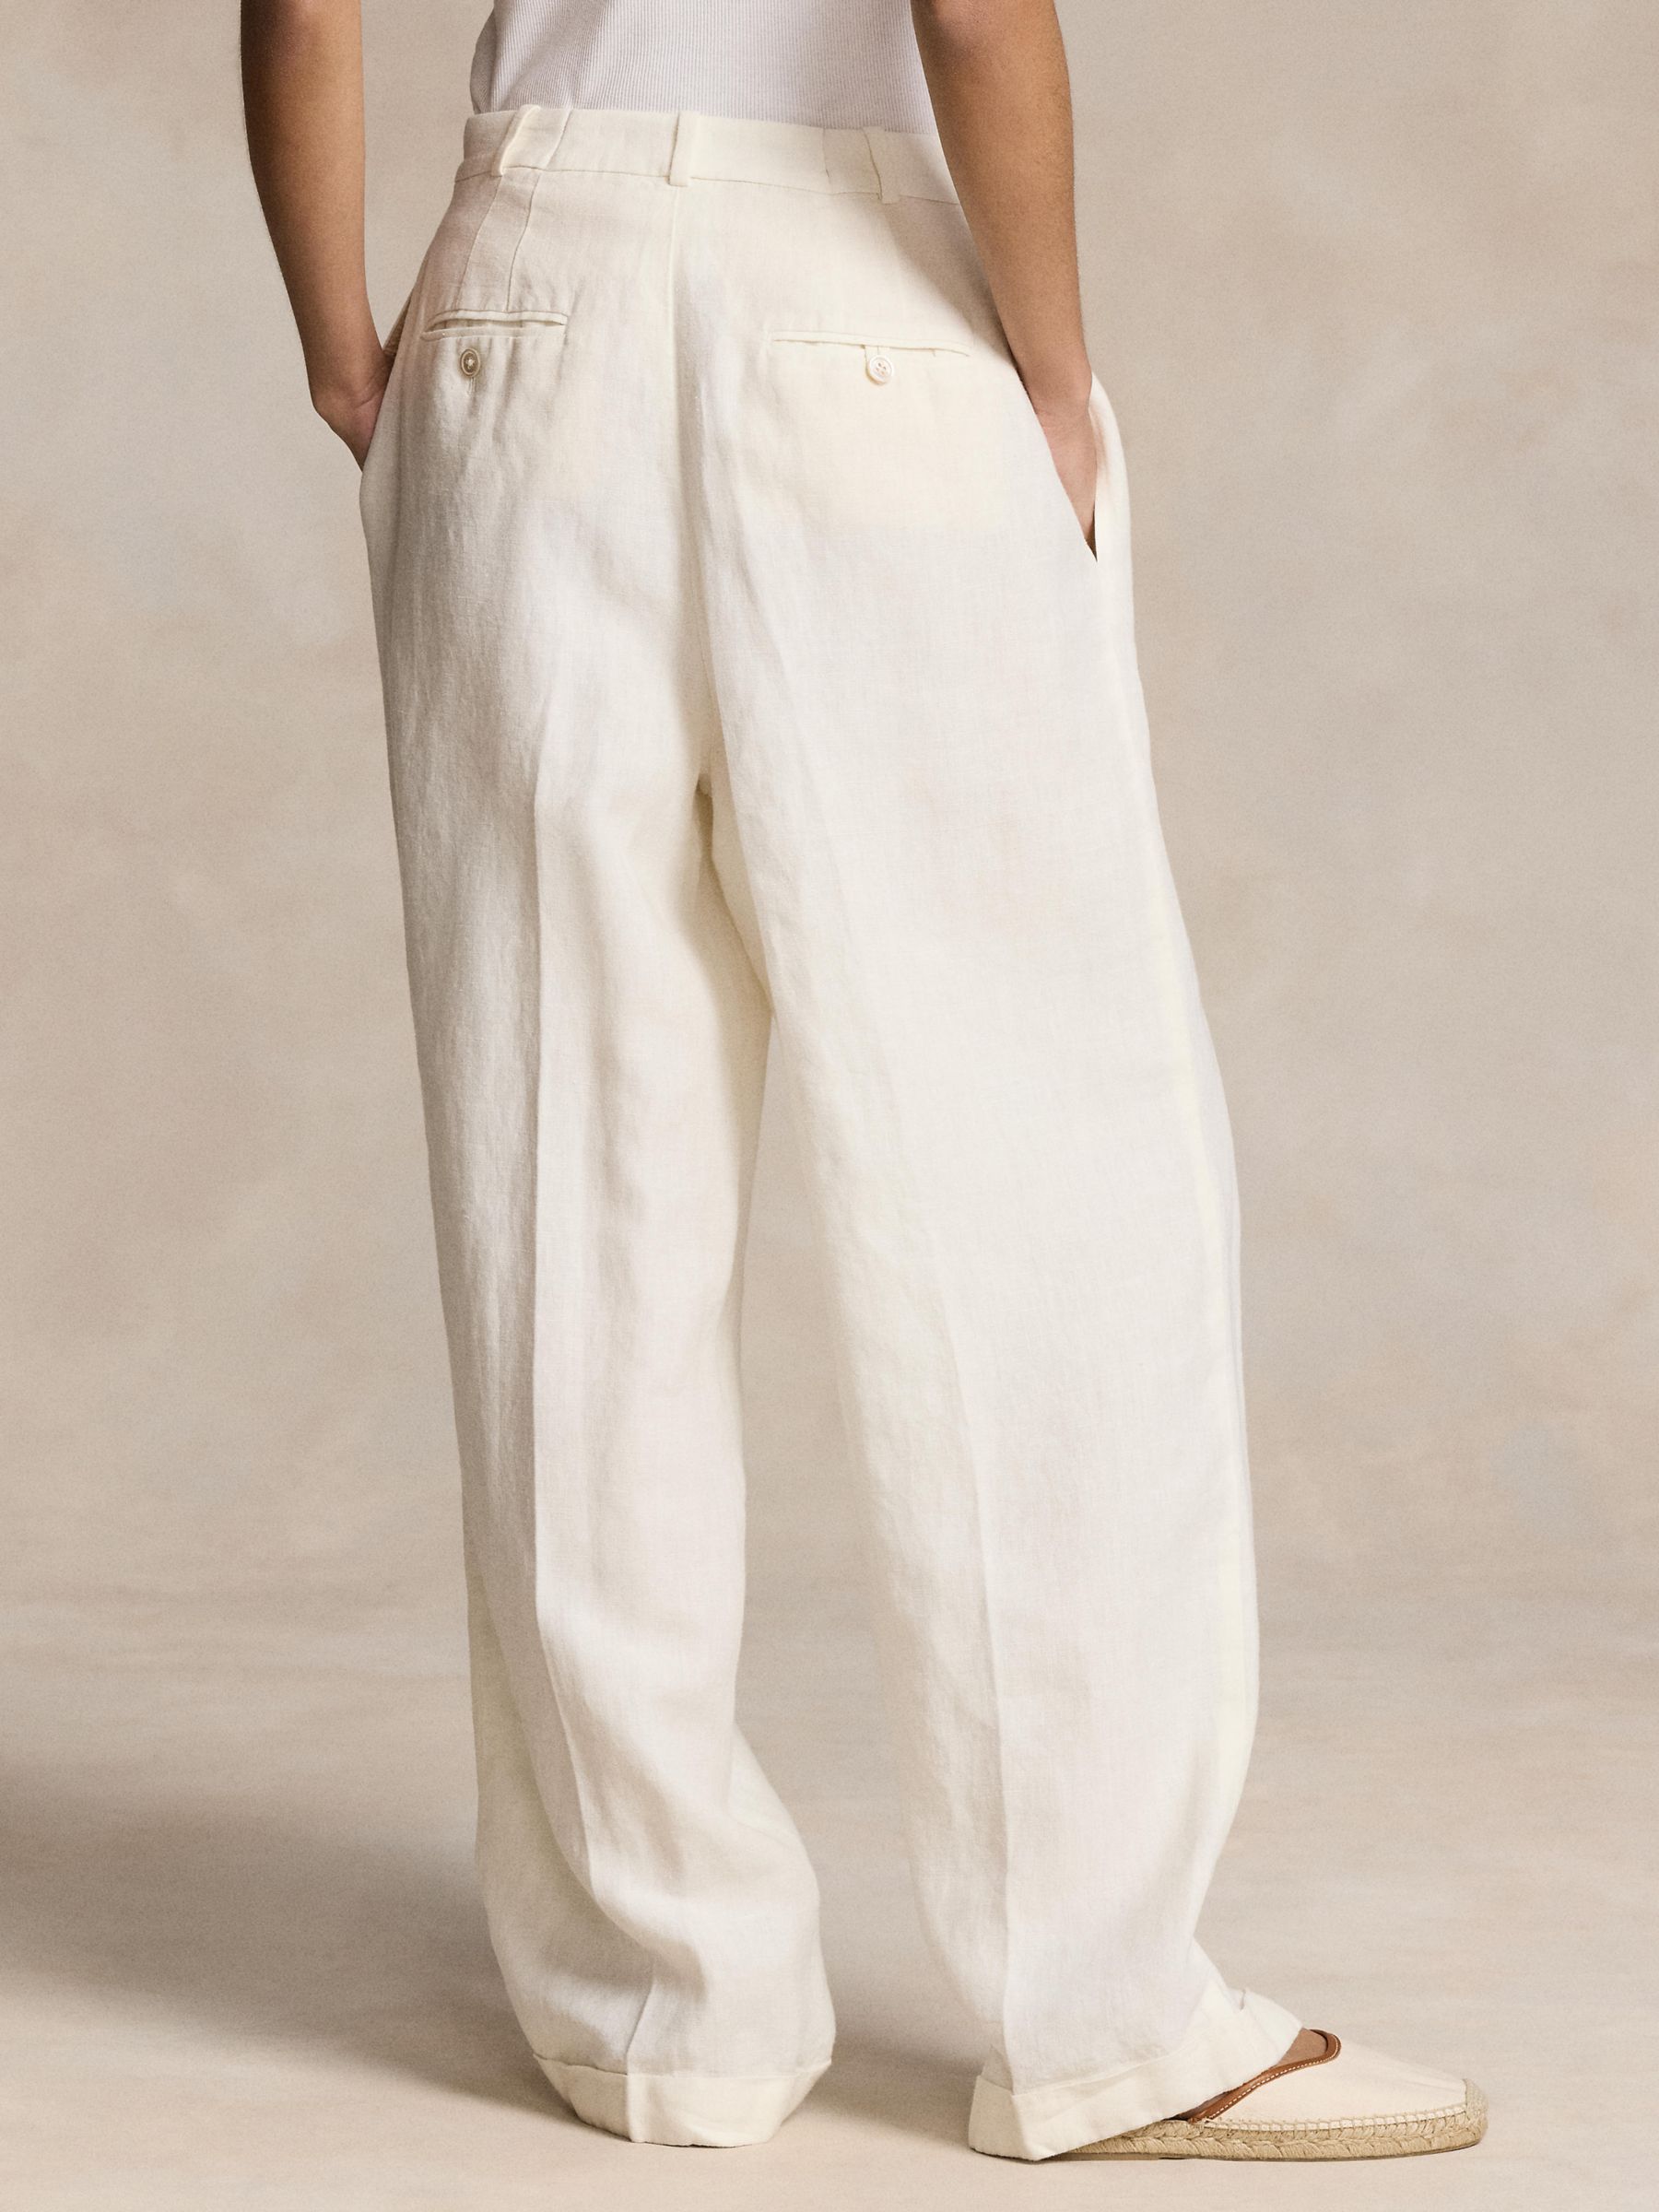 Polo Ralph Lauren Linen Blend Wide Leg Trousers, Nevis, 8